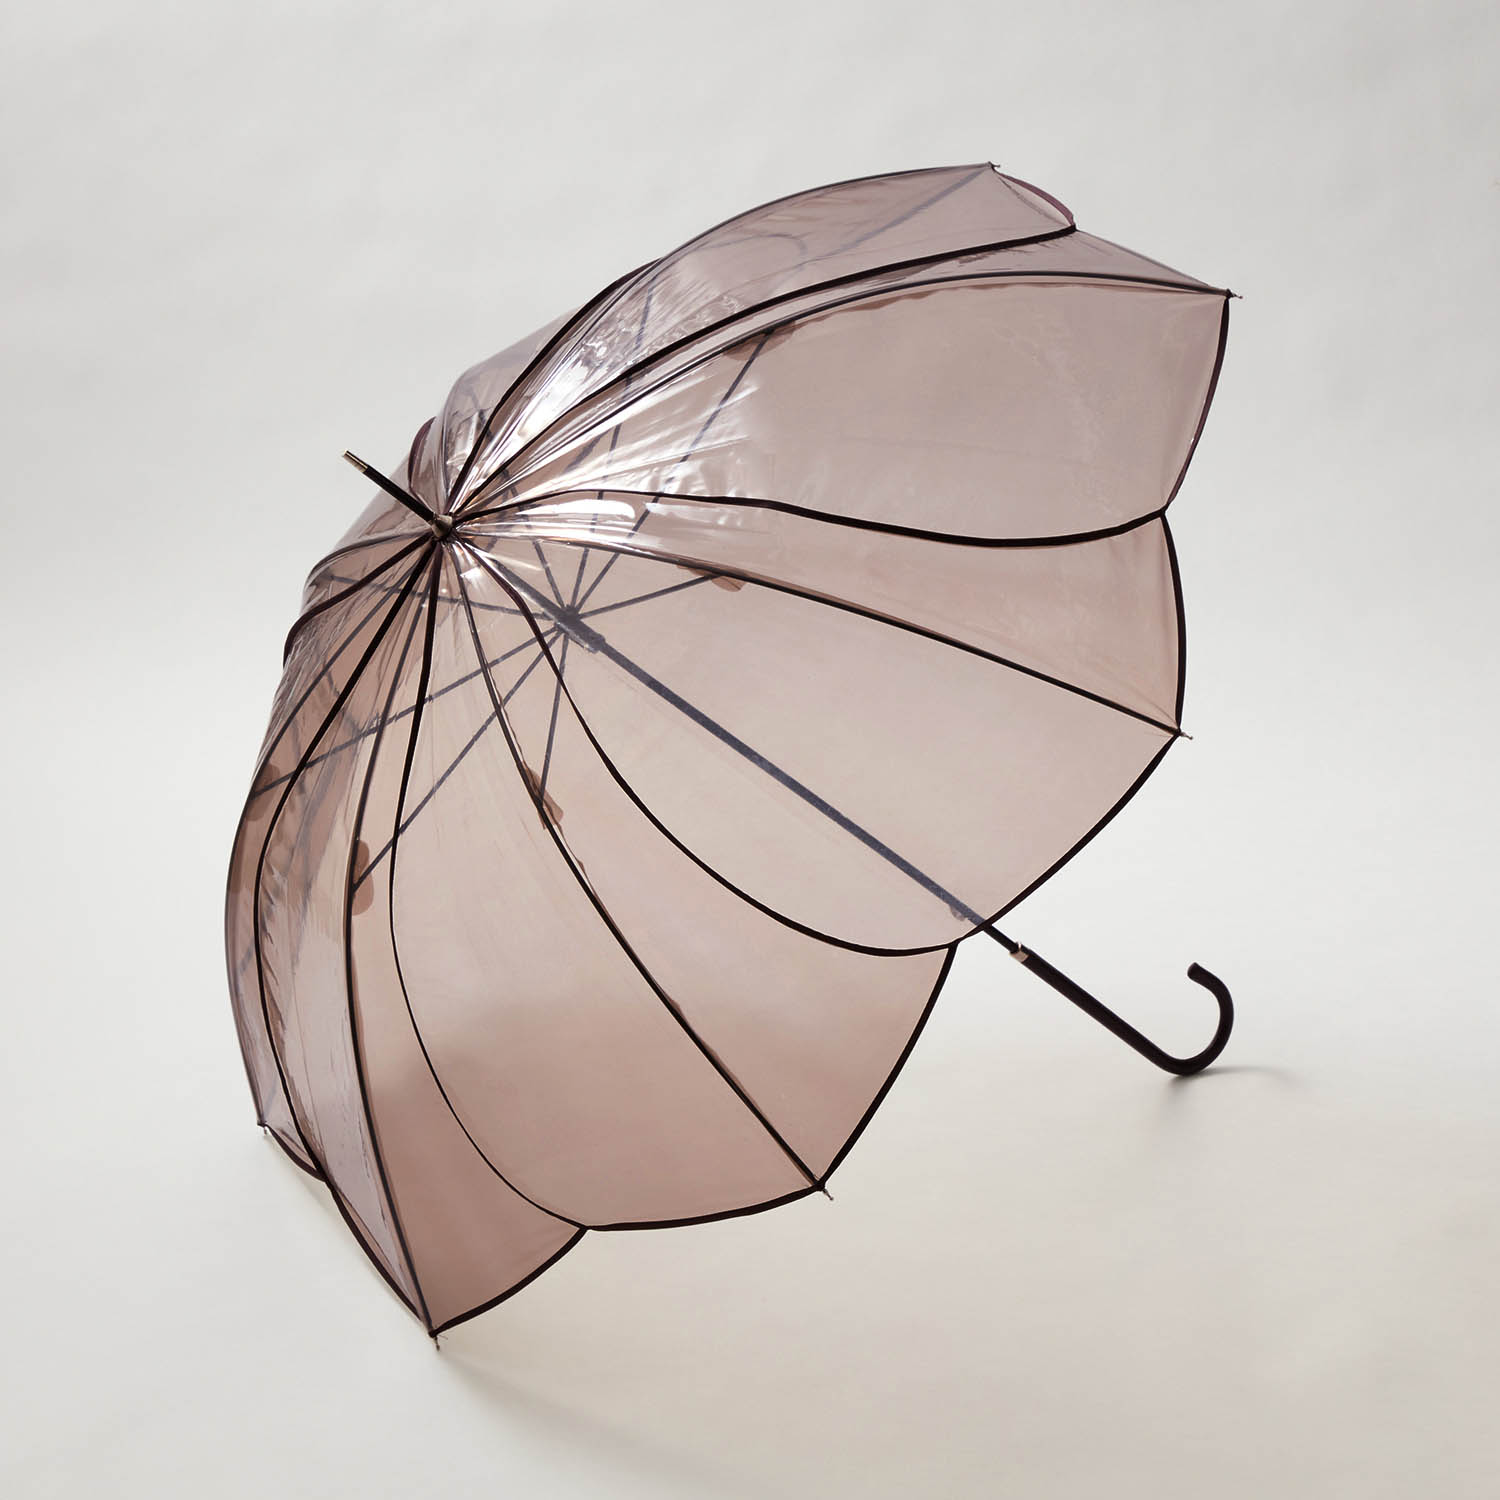 傘 長傘 アンブレラ レイングッズ 雨具 透明 ファッショングッズ フラワー型 パイピング ファッシ...